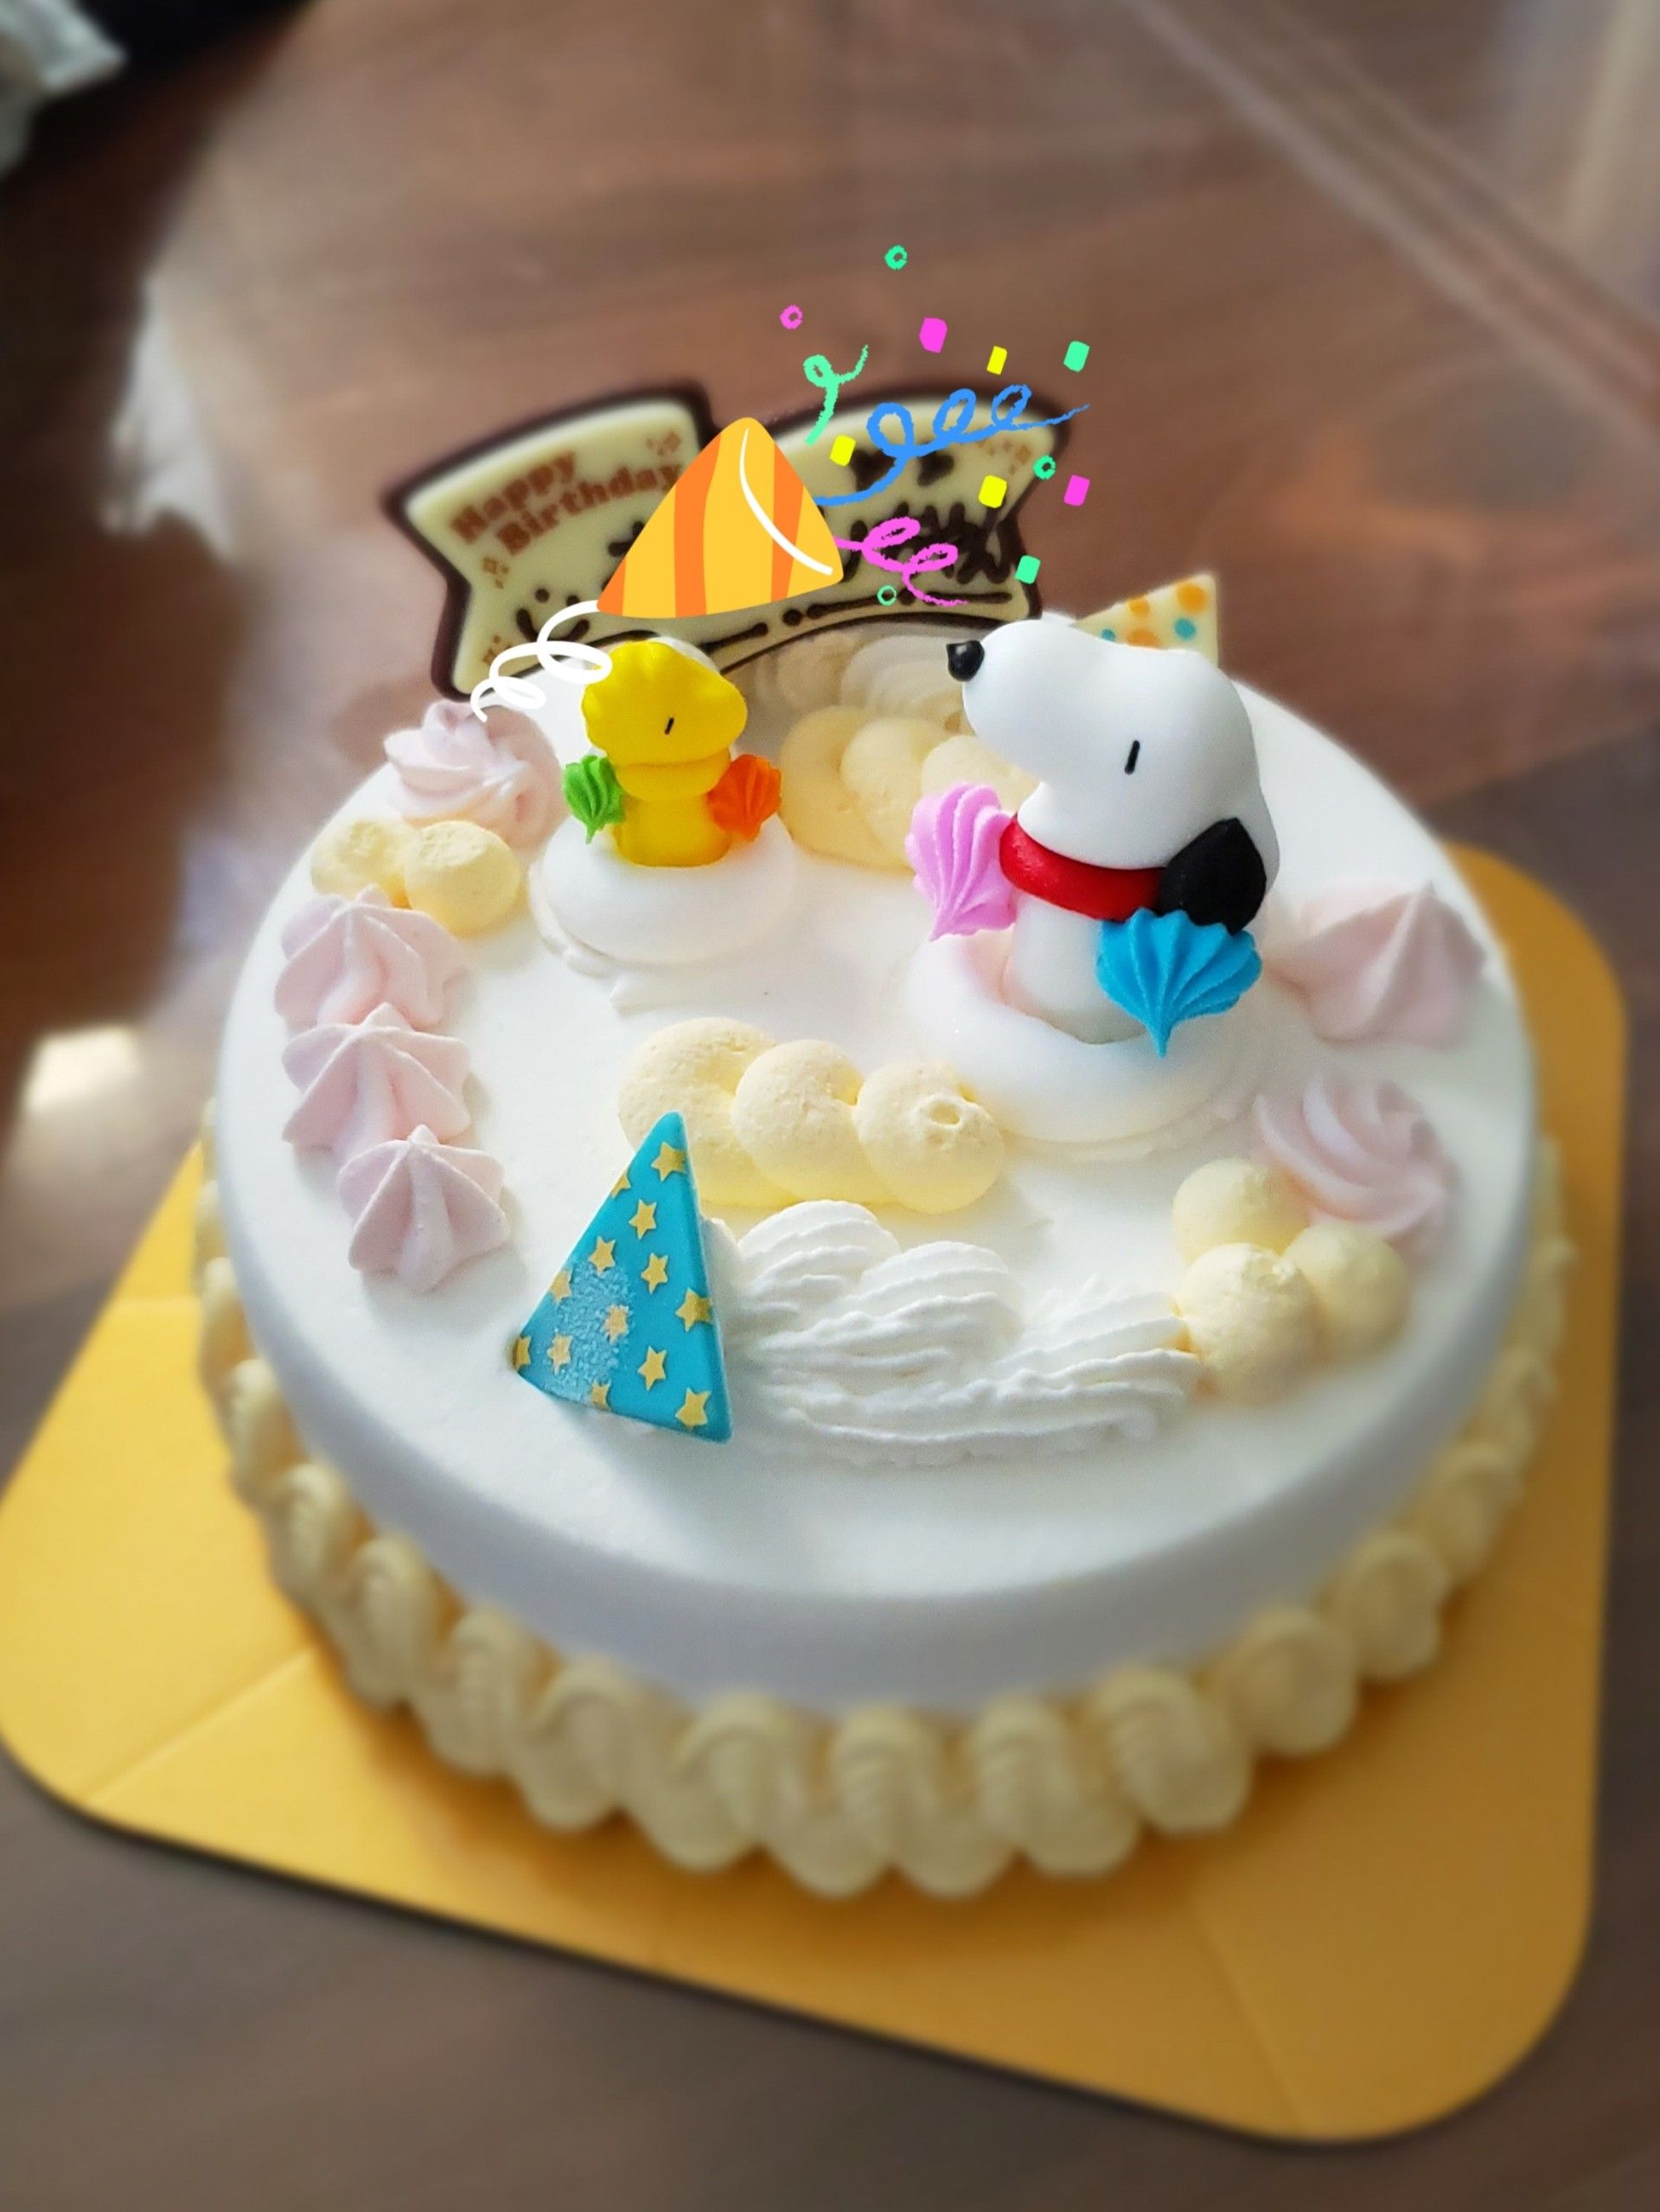 娘5歳のお誕生日 スヌーピーのアイスケーキでお祝い Happy 育児日記 楽天ブログ